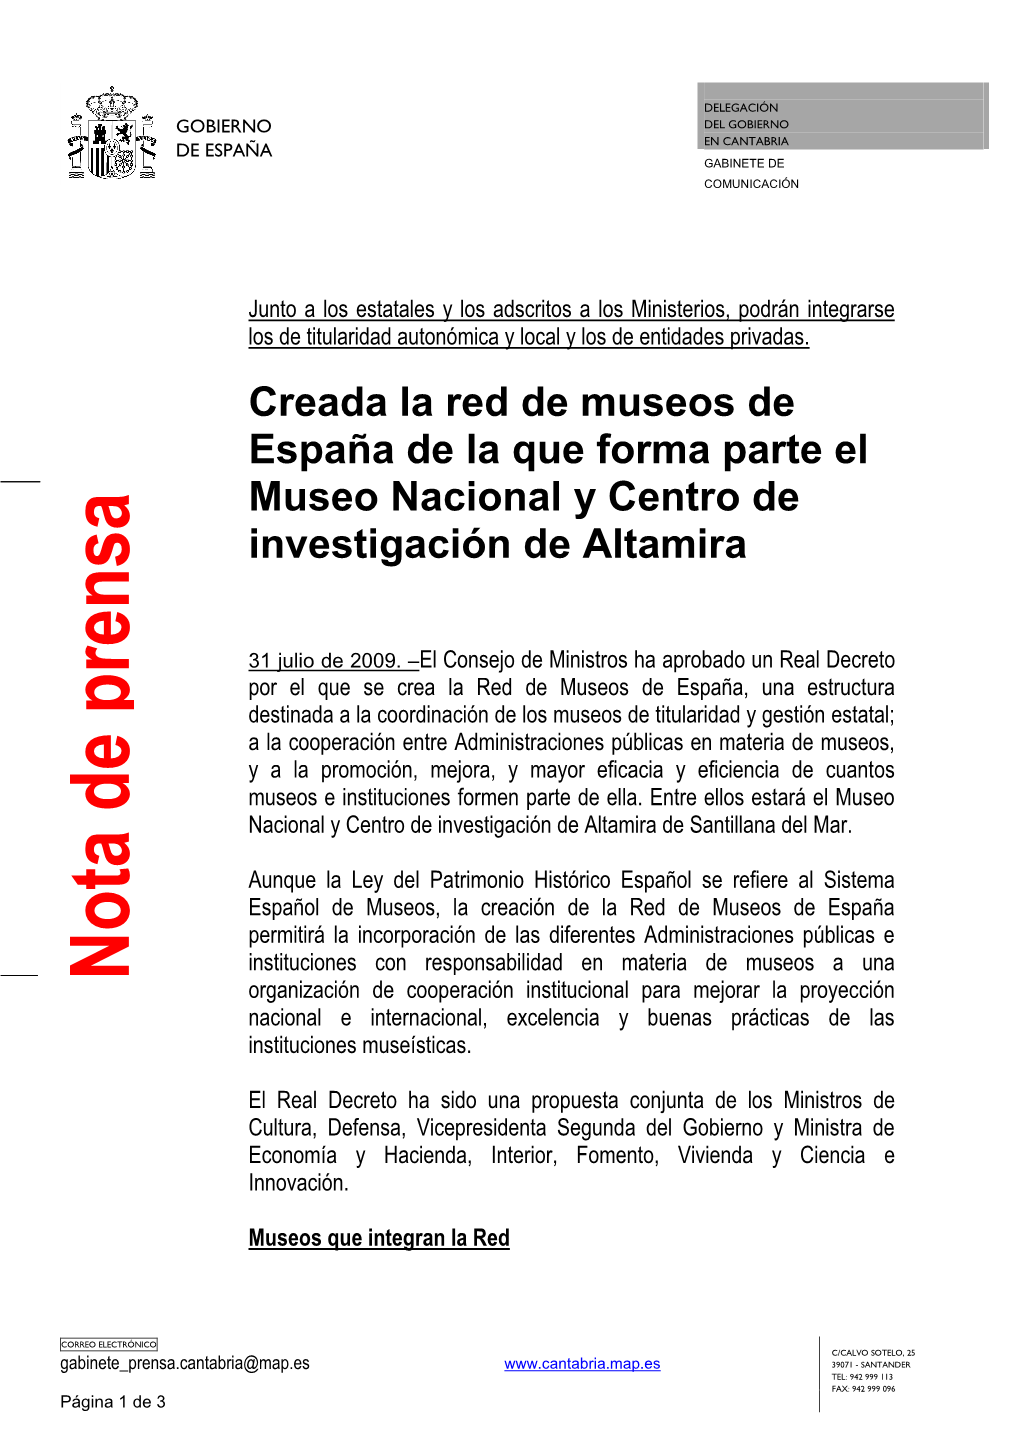 Creada La Red De Museos De España De La Que Forma Parte El Museo Nacional Y Centro De Investigación De Altamira